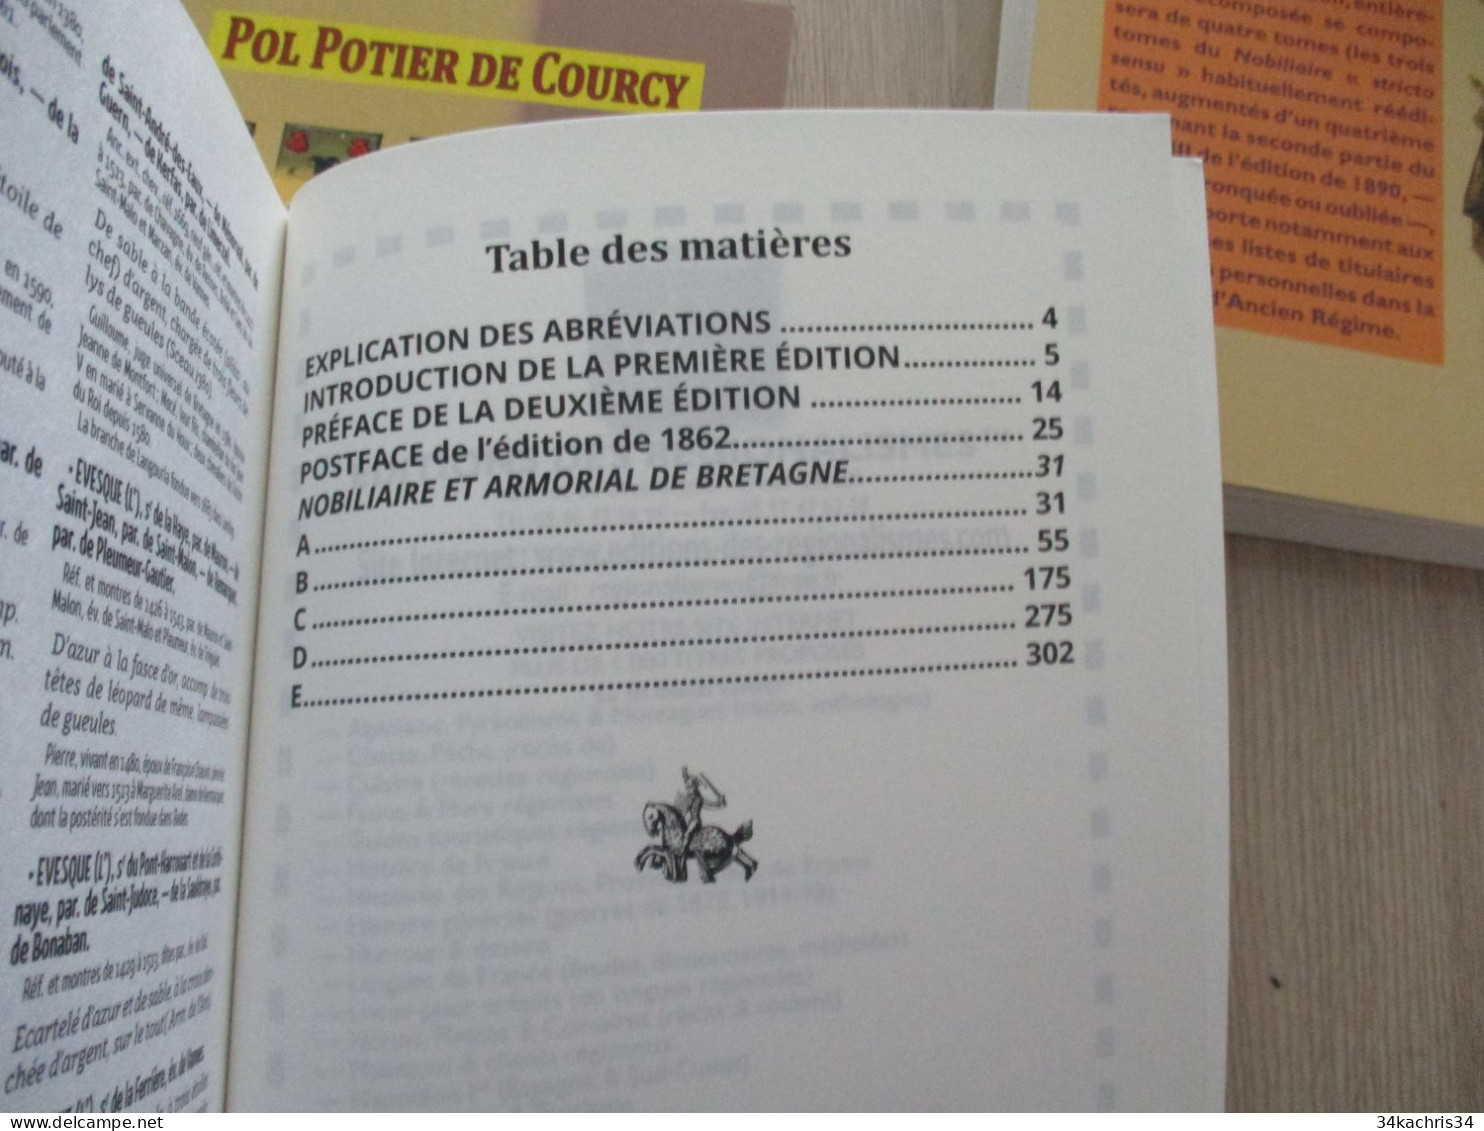 POL POTIER DE COURCY Nobiliaire et Armorial de Bretagne 4 Tomes neufs Chez Editions des régionalismes